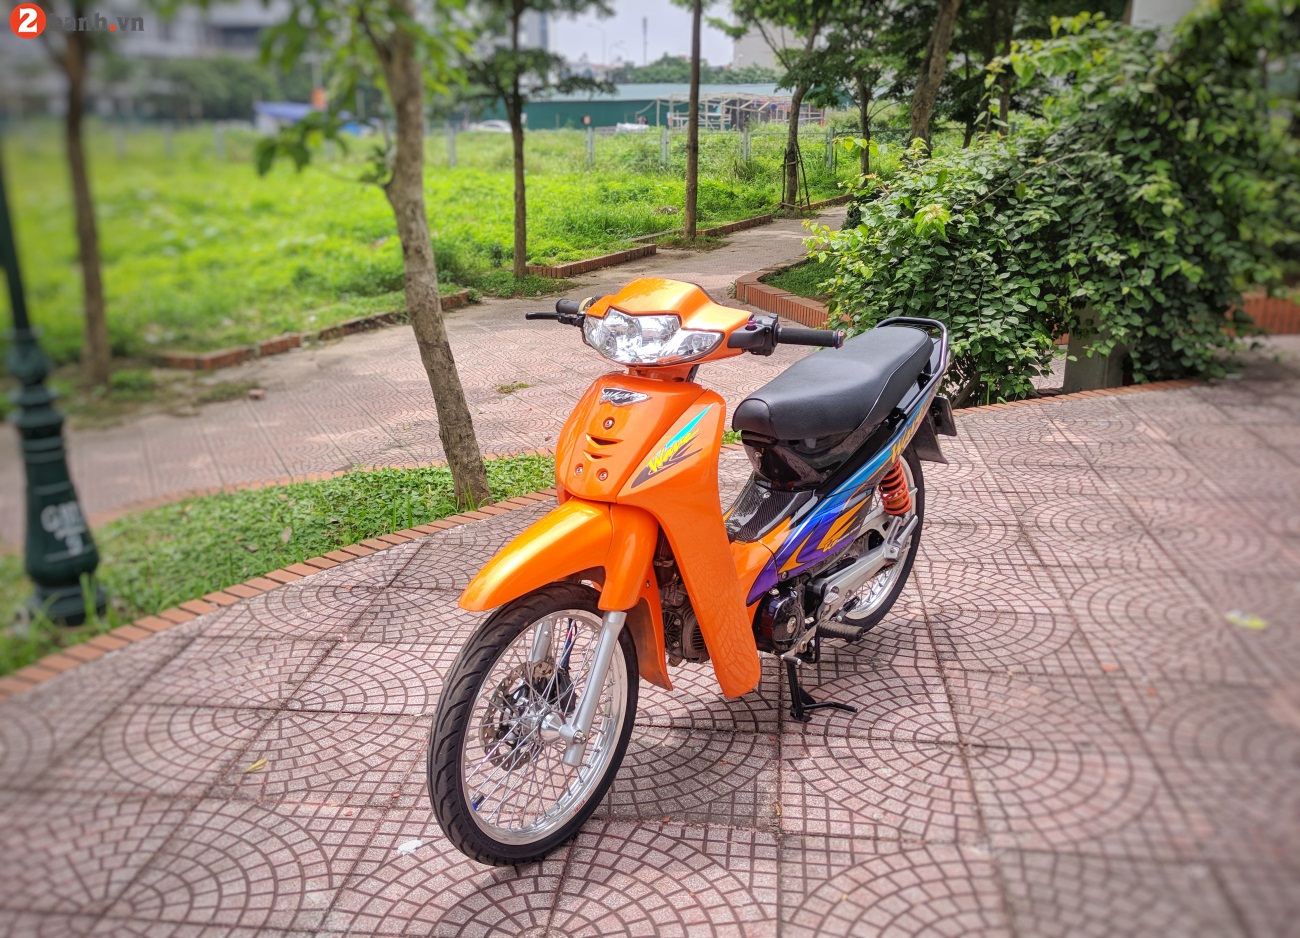 Honda Wave 110 biển tứ quý 7 độ “nóng bỏng” với tông màu cam